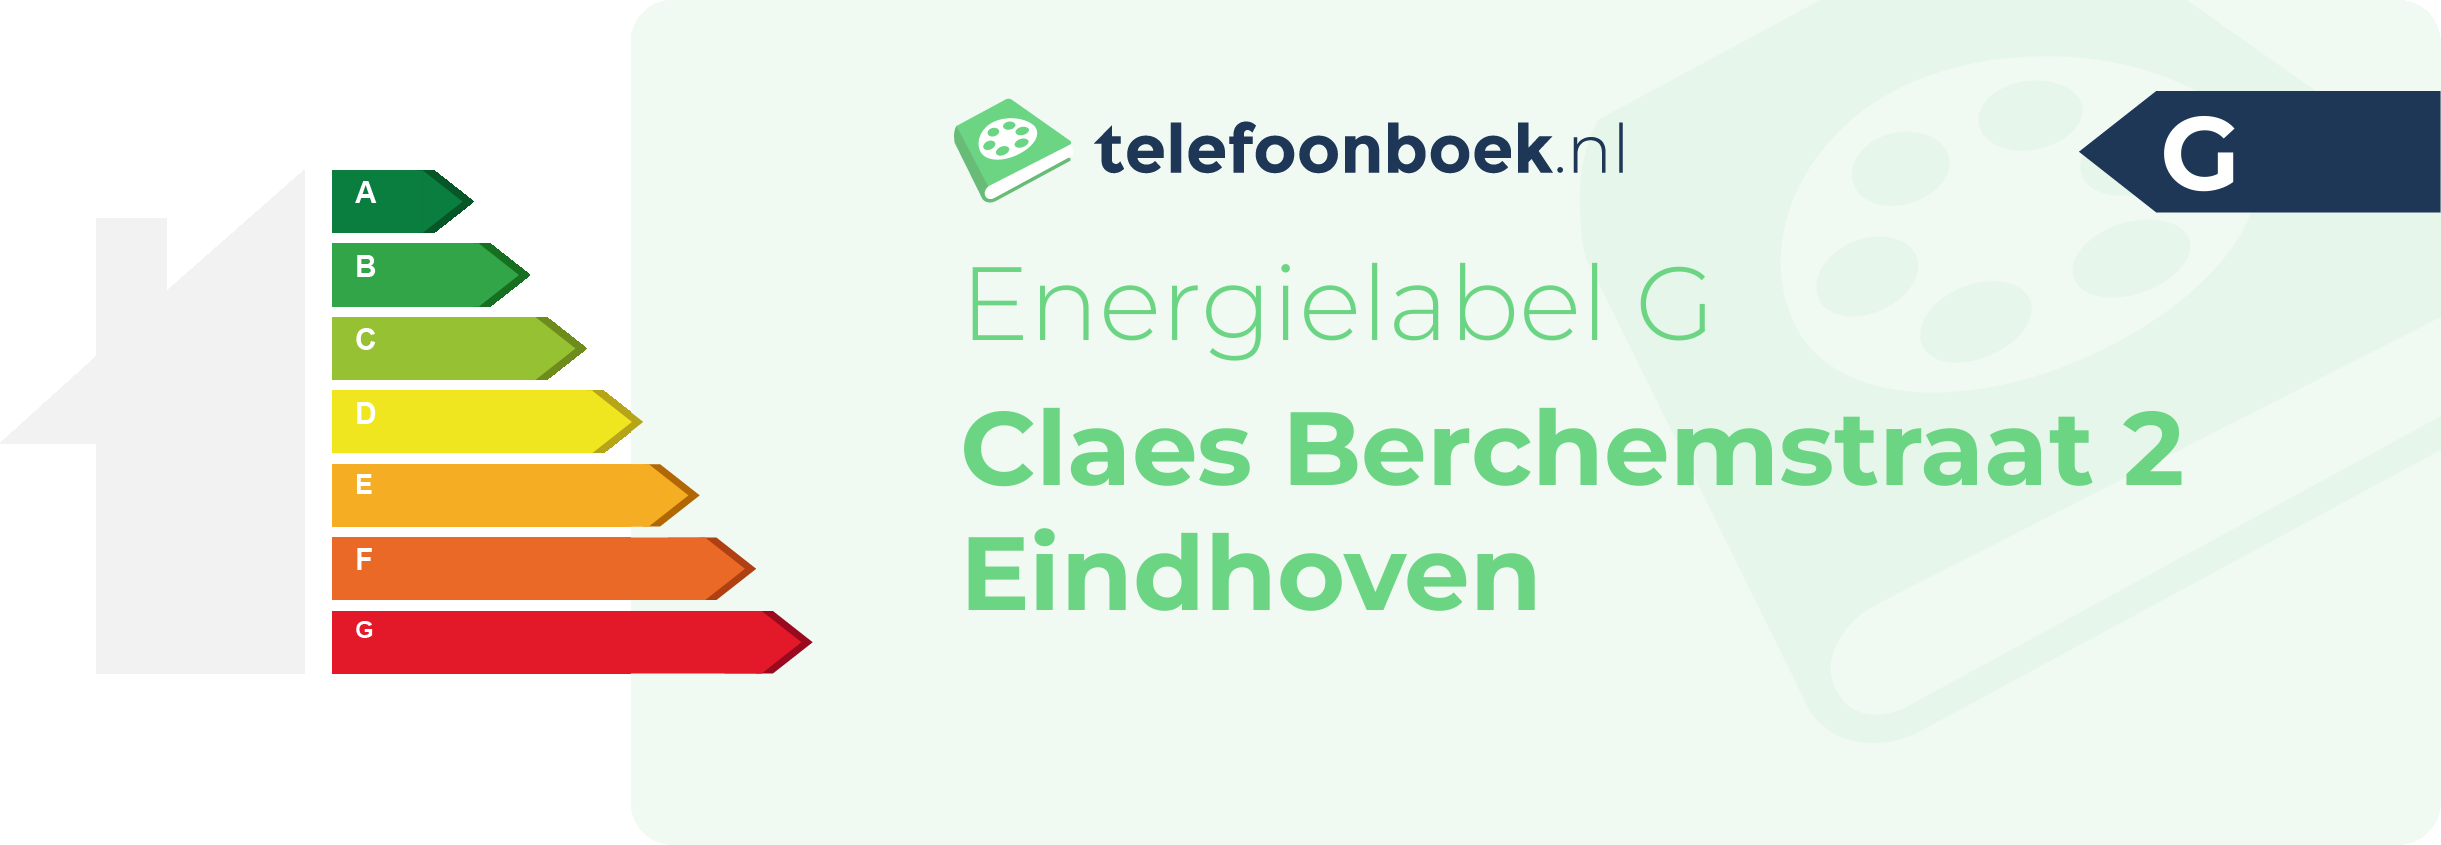 Energielabel Claes Berchemstraat 2 Eindhoven